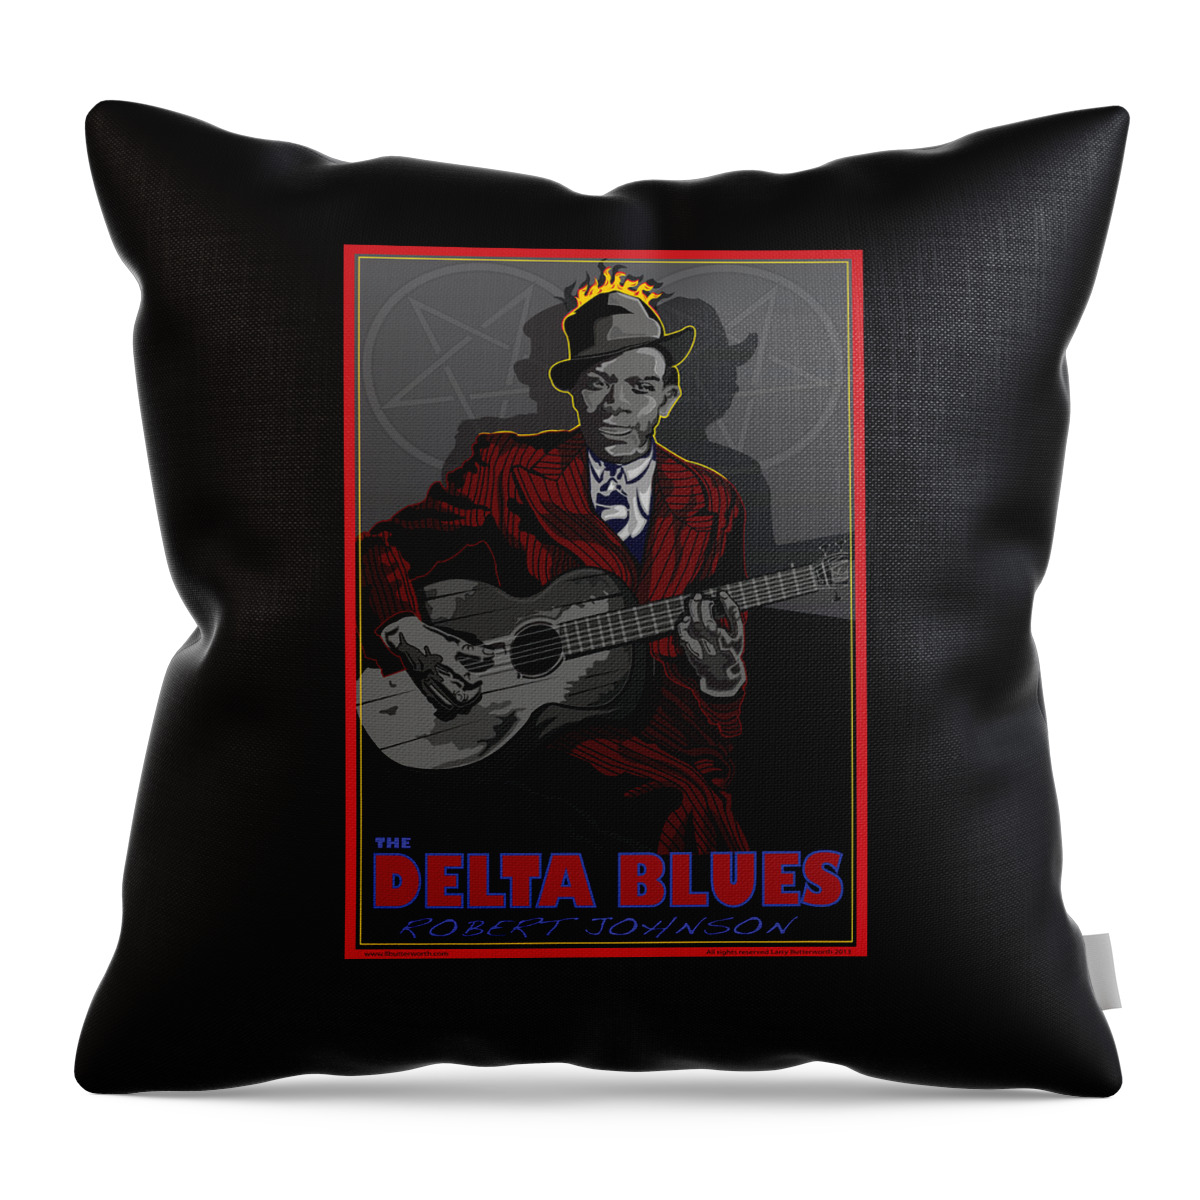 Robert Johnson Throw Pillow featuring the digital art Robert Johnson Delta Blues by Larry Butterworth